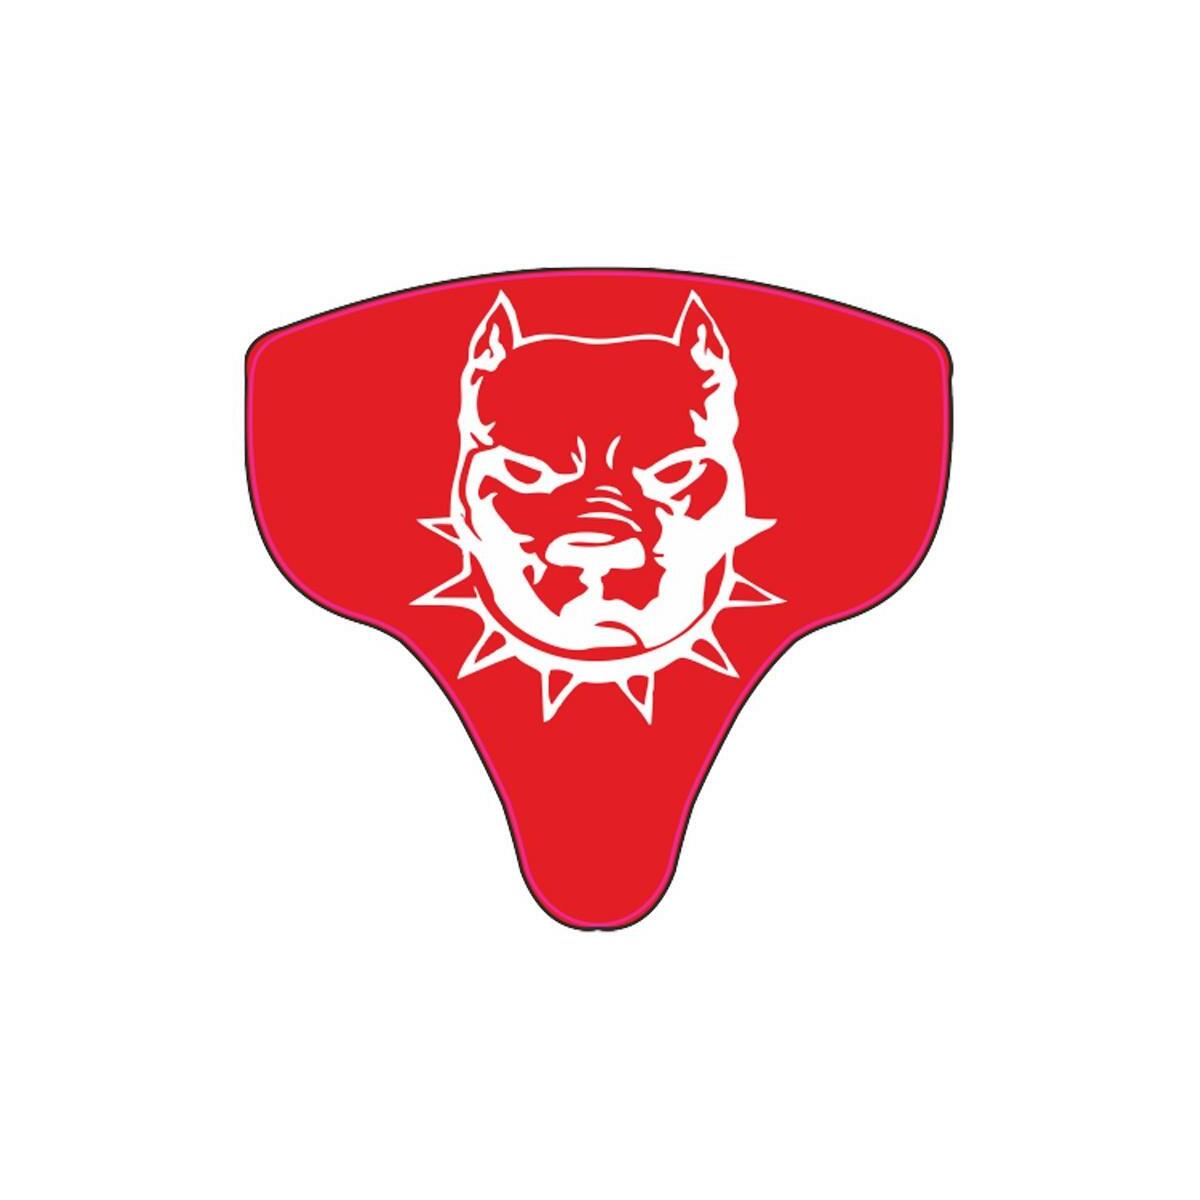 Sevenkardeşler Pitbull Kırmızı Mondial Mh Drift 2011 - 2020 Uyumlu Siperlik Sticker